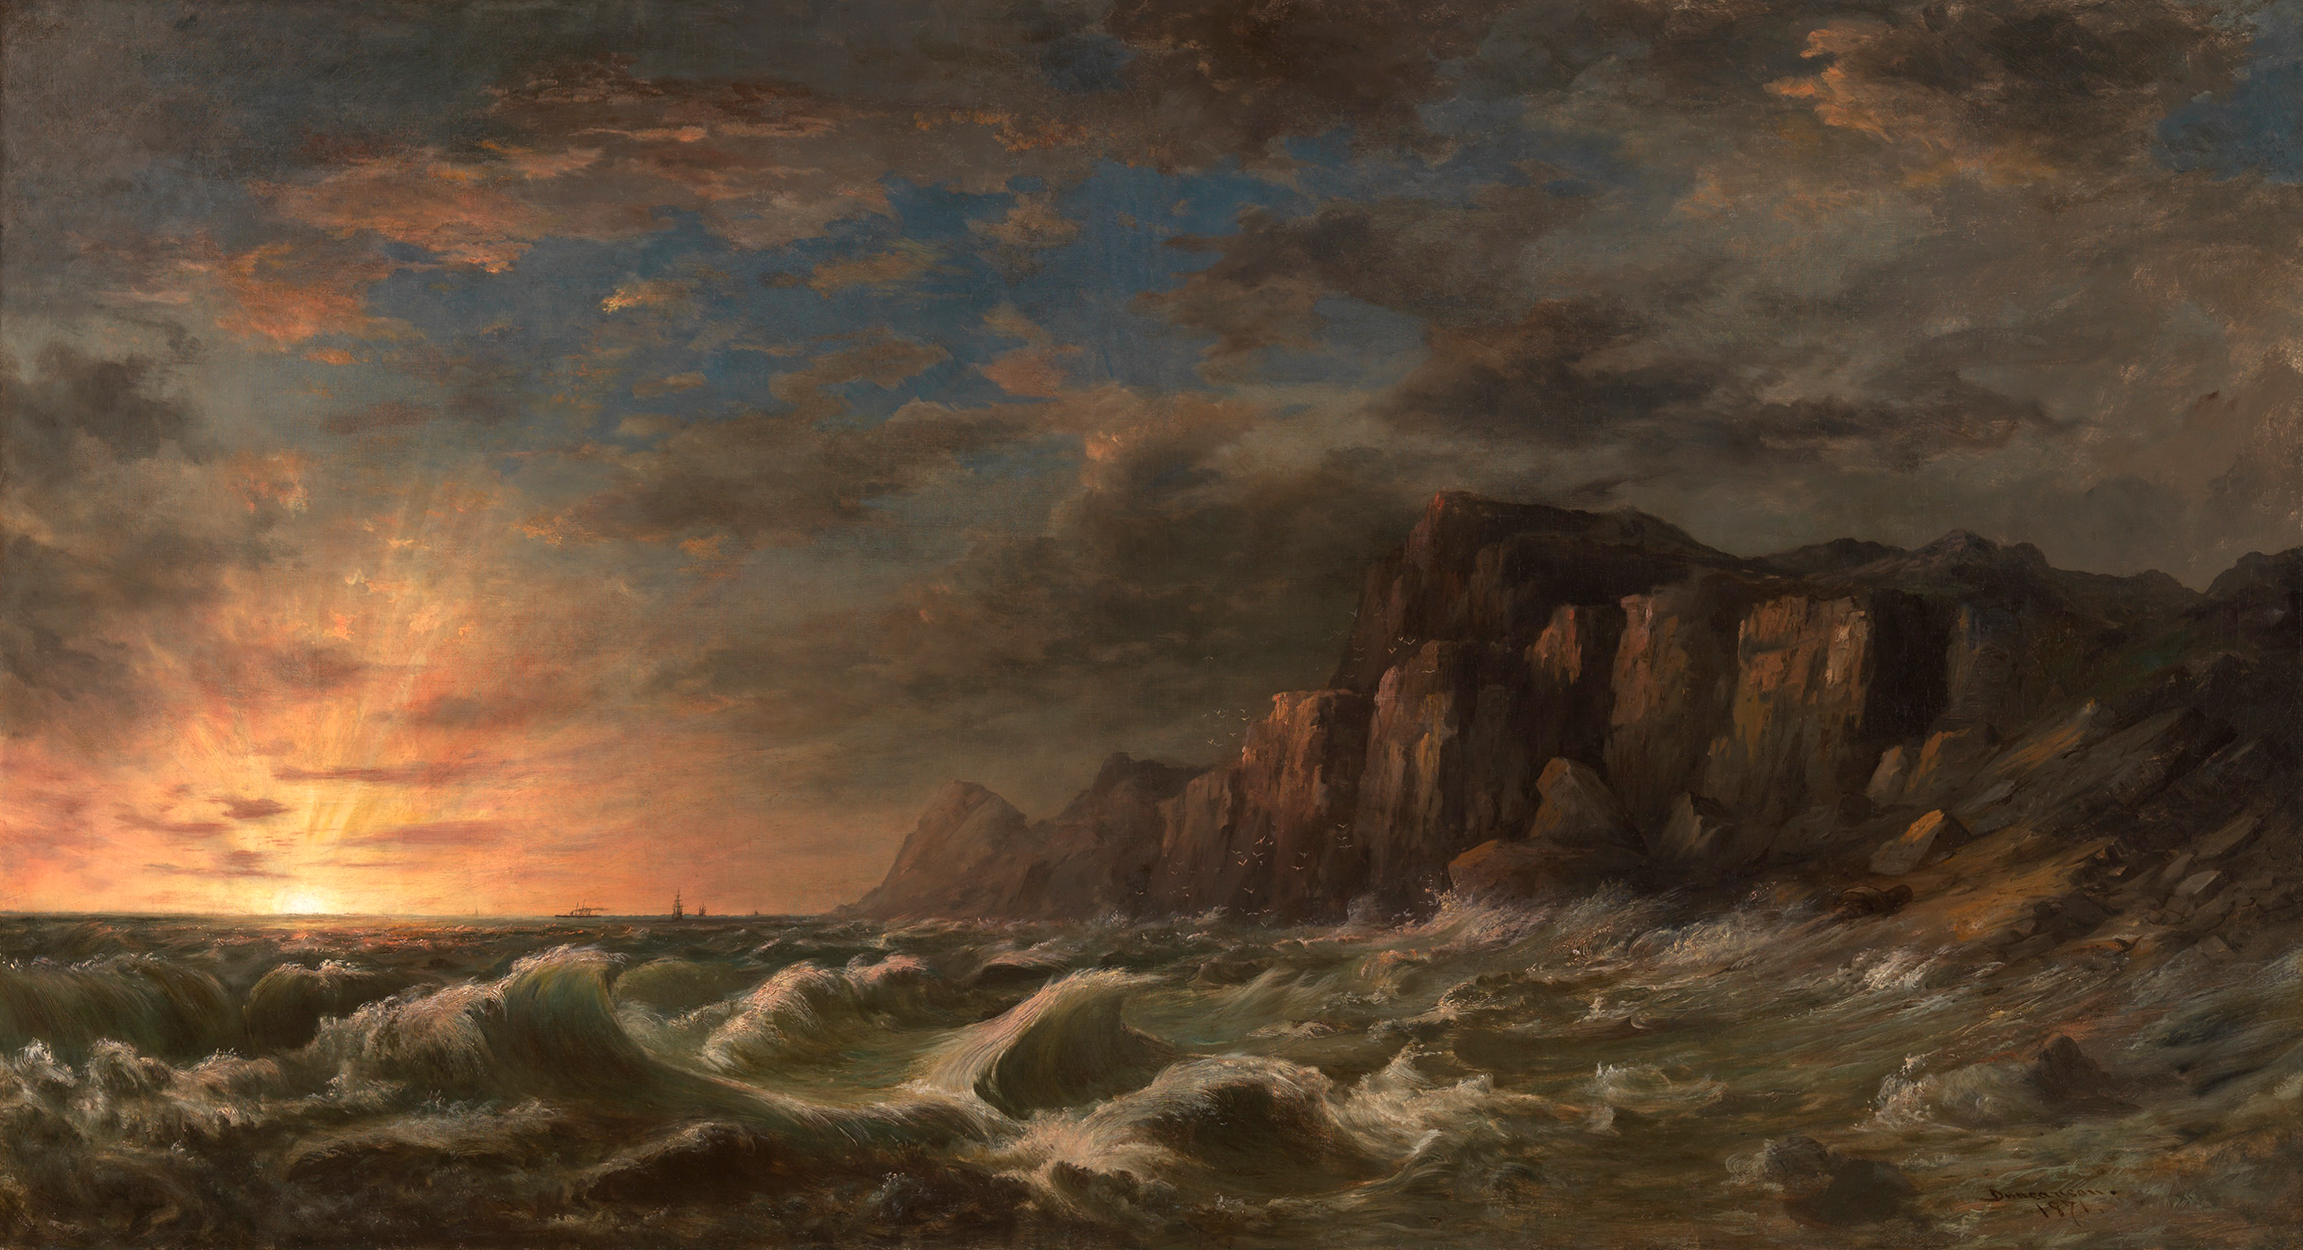 ニューイングランド海岸の夕焼け by Robert Duncanson - 1871年 - 92 x 169.5 cm 